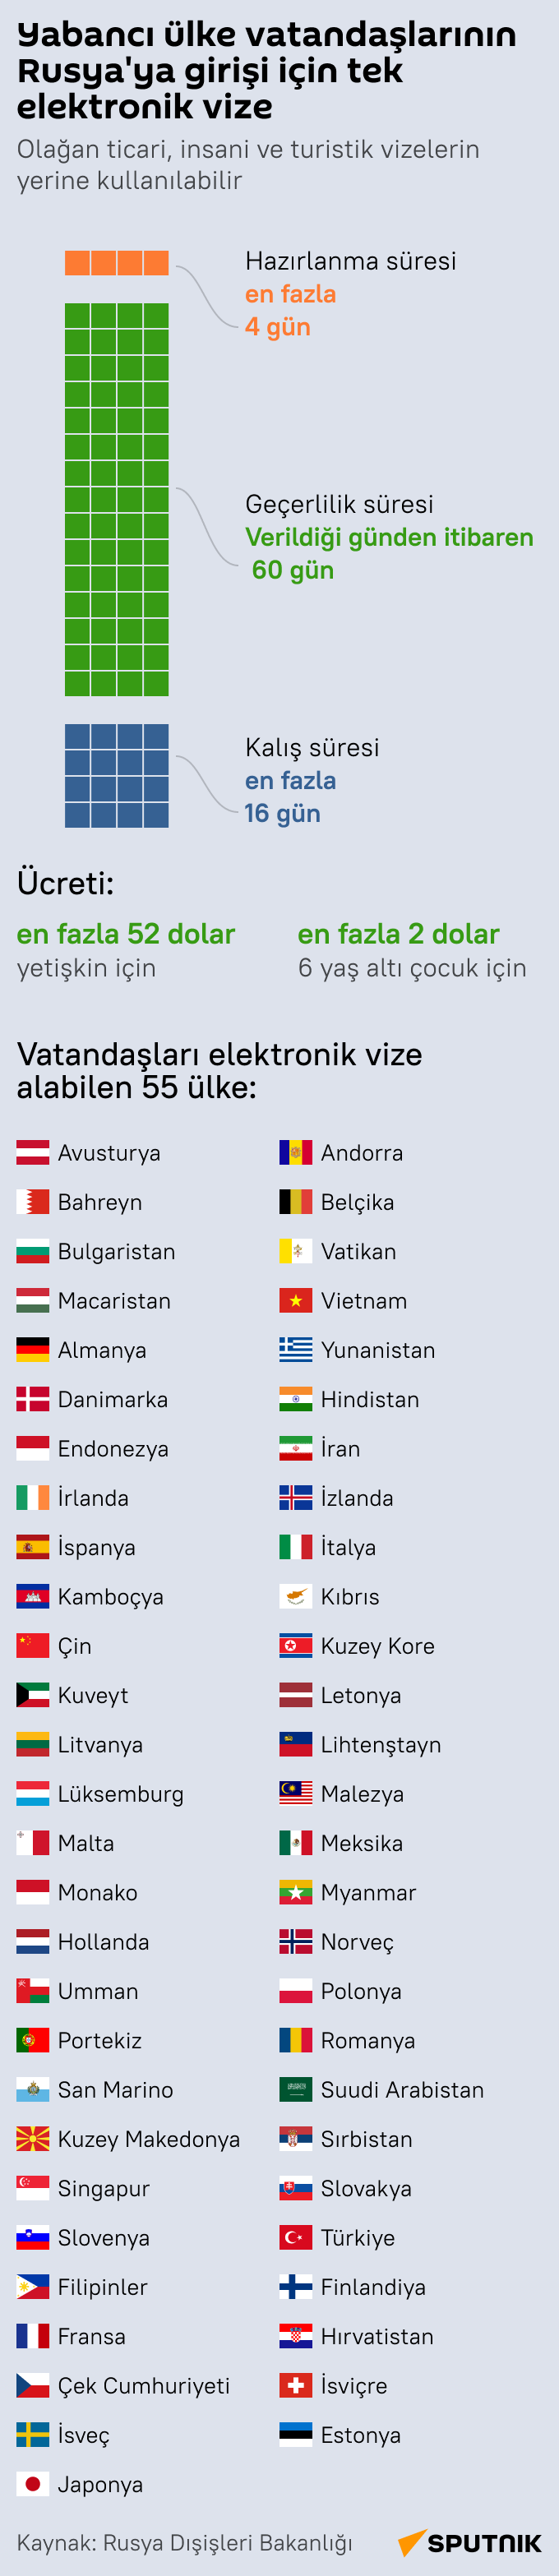 Rusya'dan 55 ülkeye e-vize uygulaması infografik  - Sputnik Türkiye